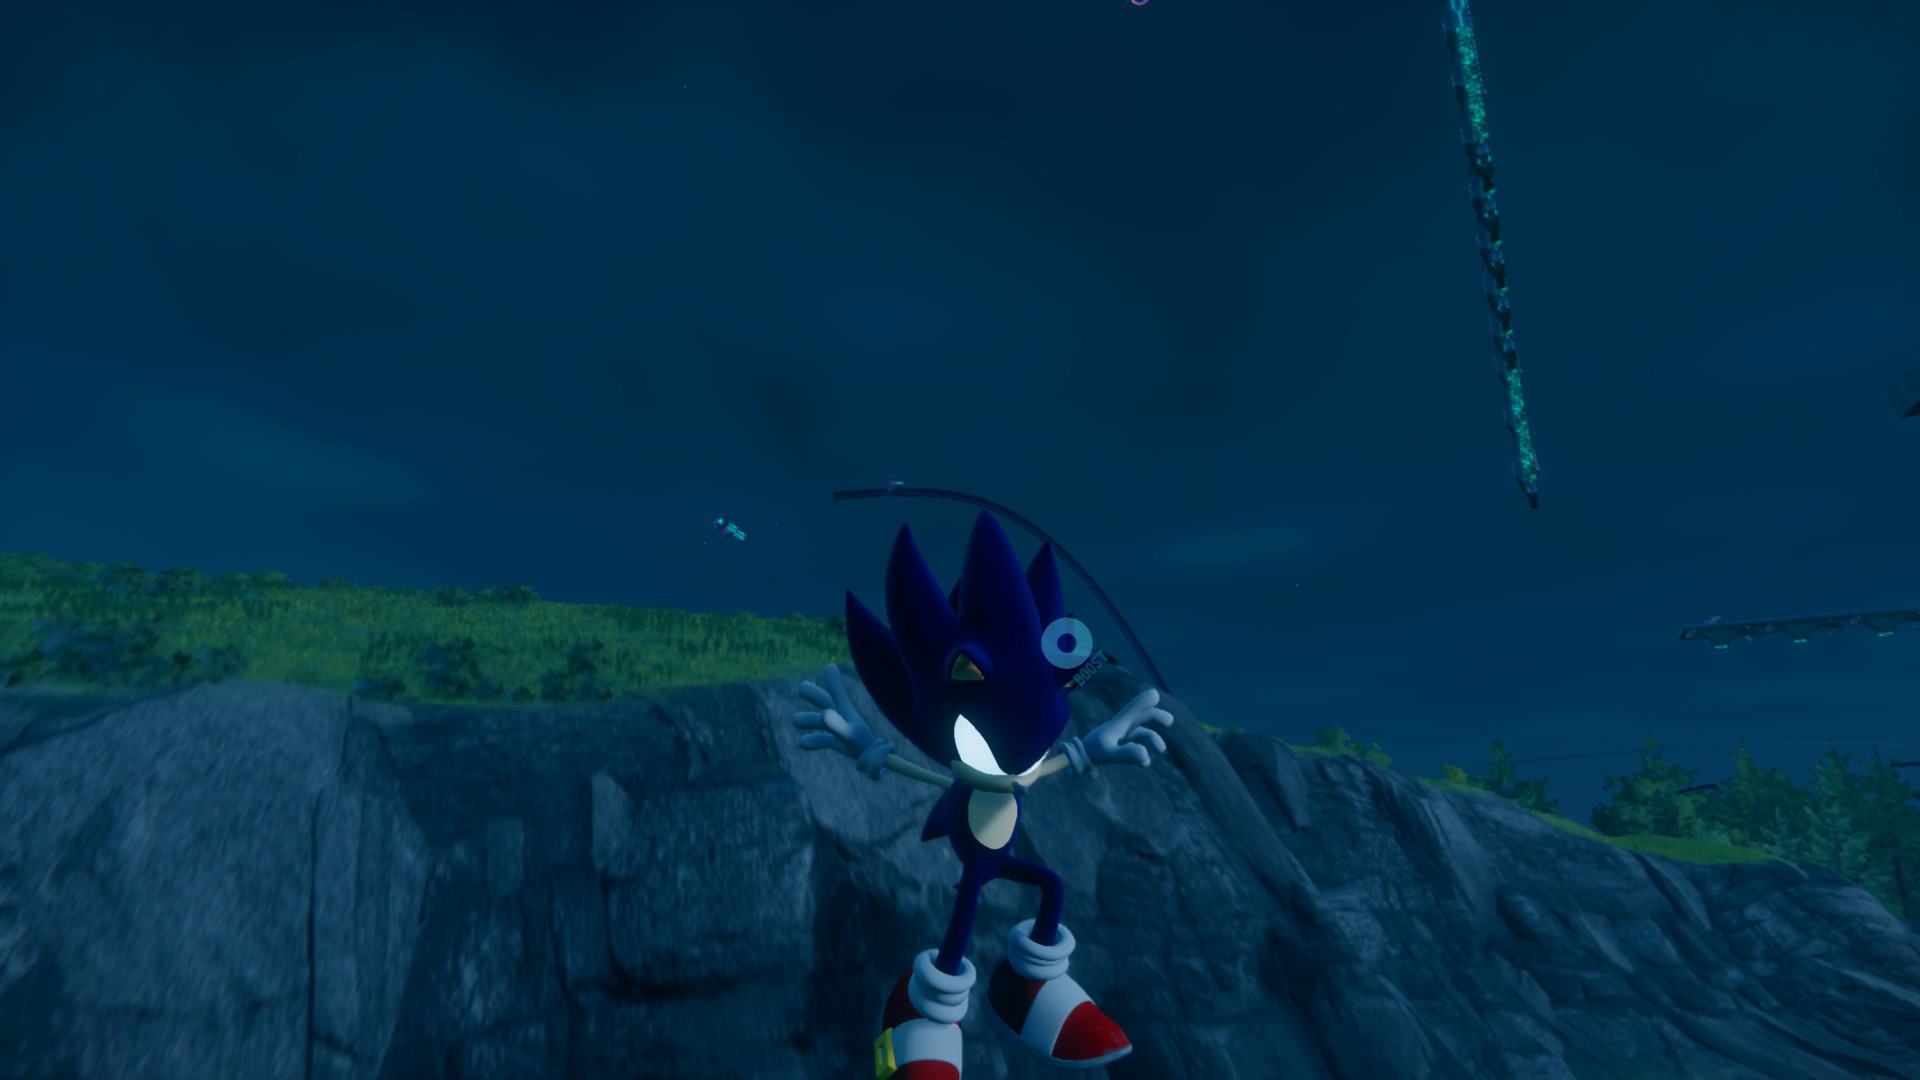 Dark Sonic [Sonic Frontiers] [Mods]